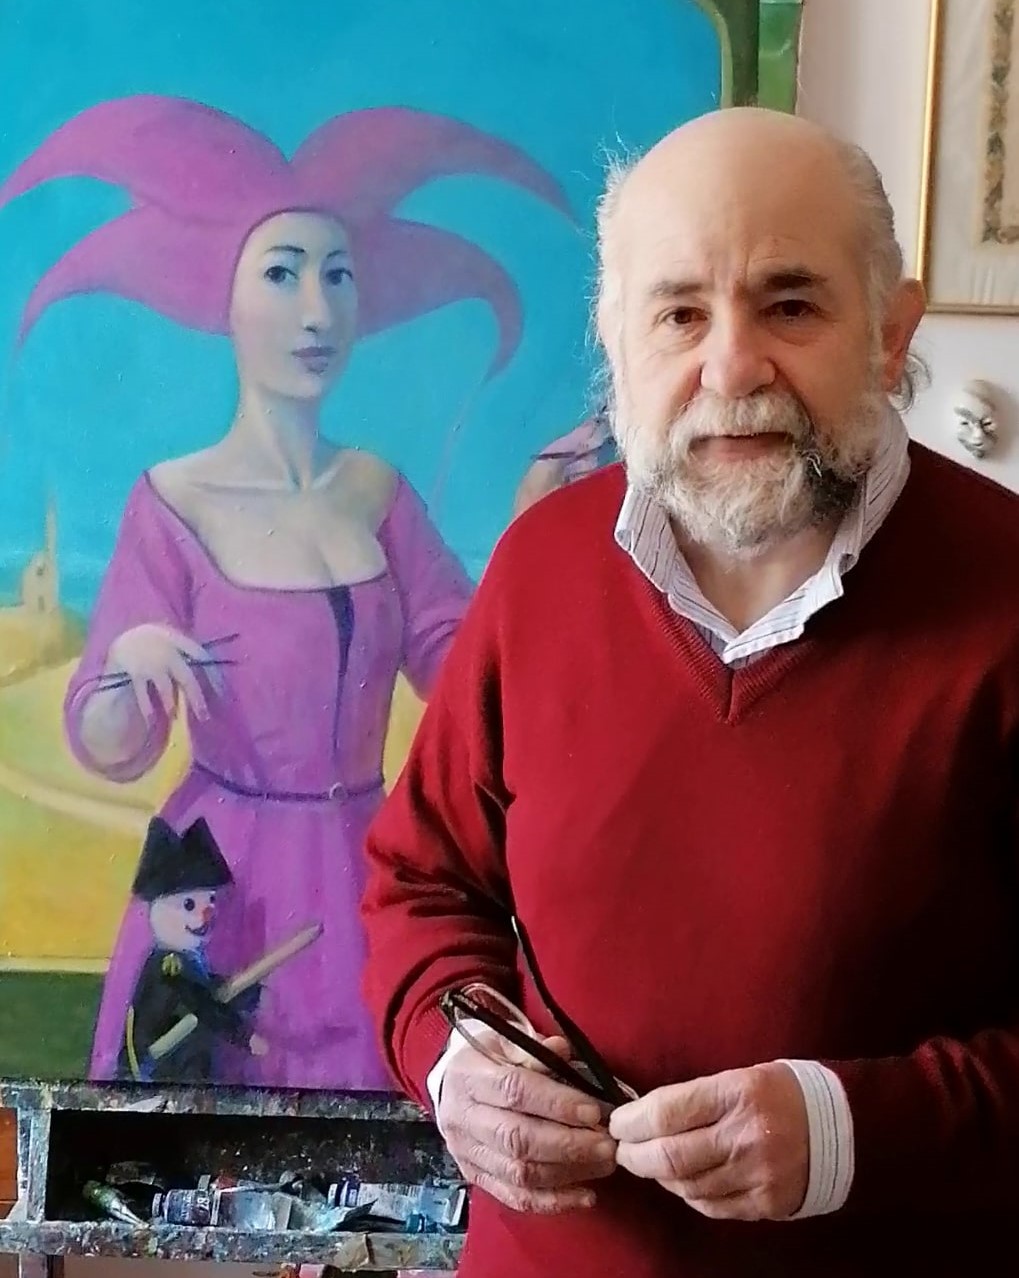 Intervista all’artista, gallerista e curatore d’arte Claudio Giulianelli